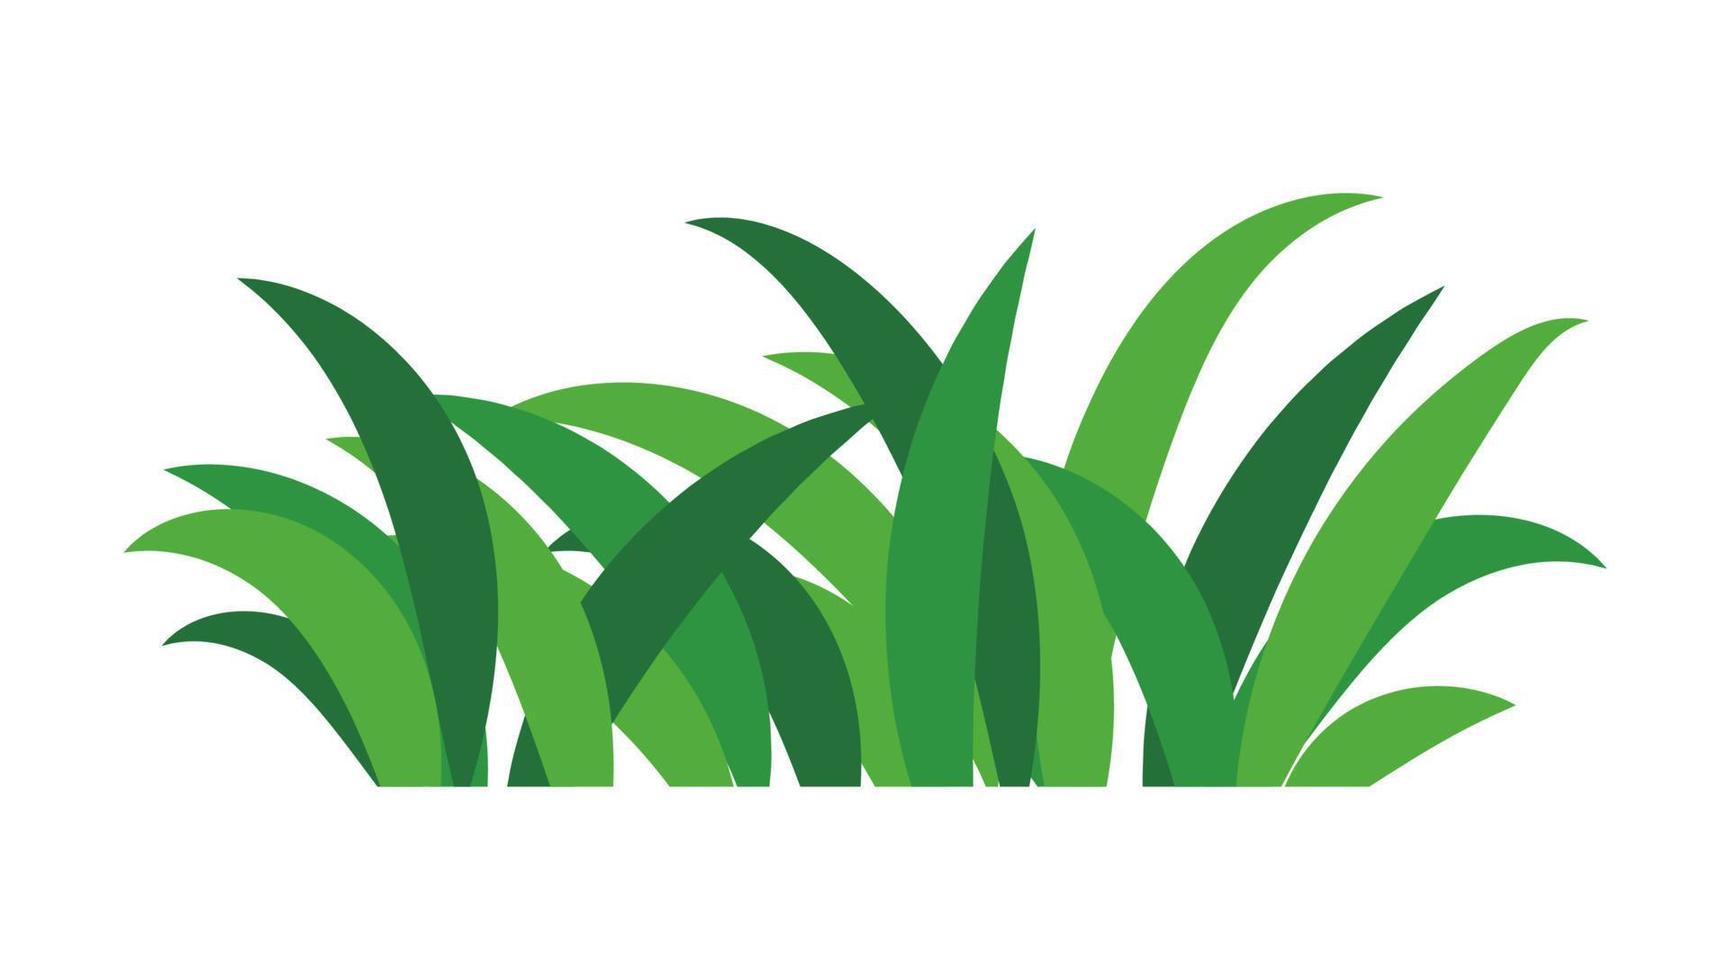 arbustos de hierba verde natural decoran escena de dibujos animados de ecología ambiental vector